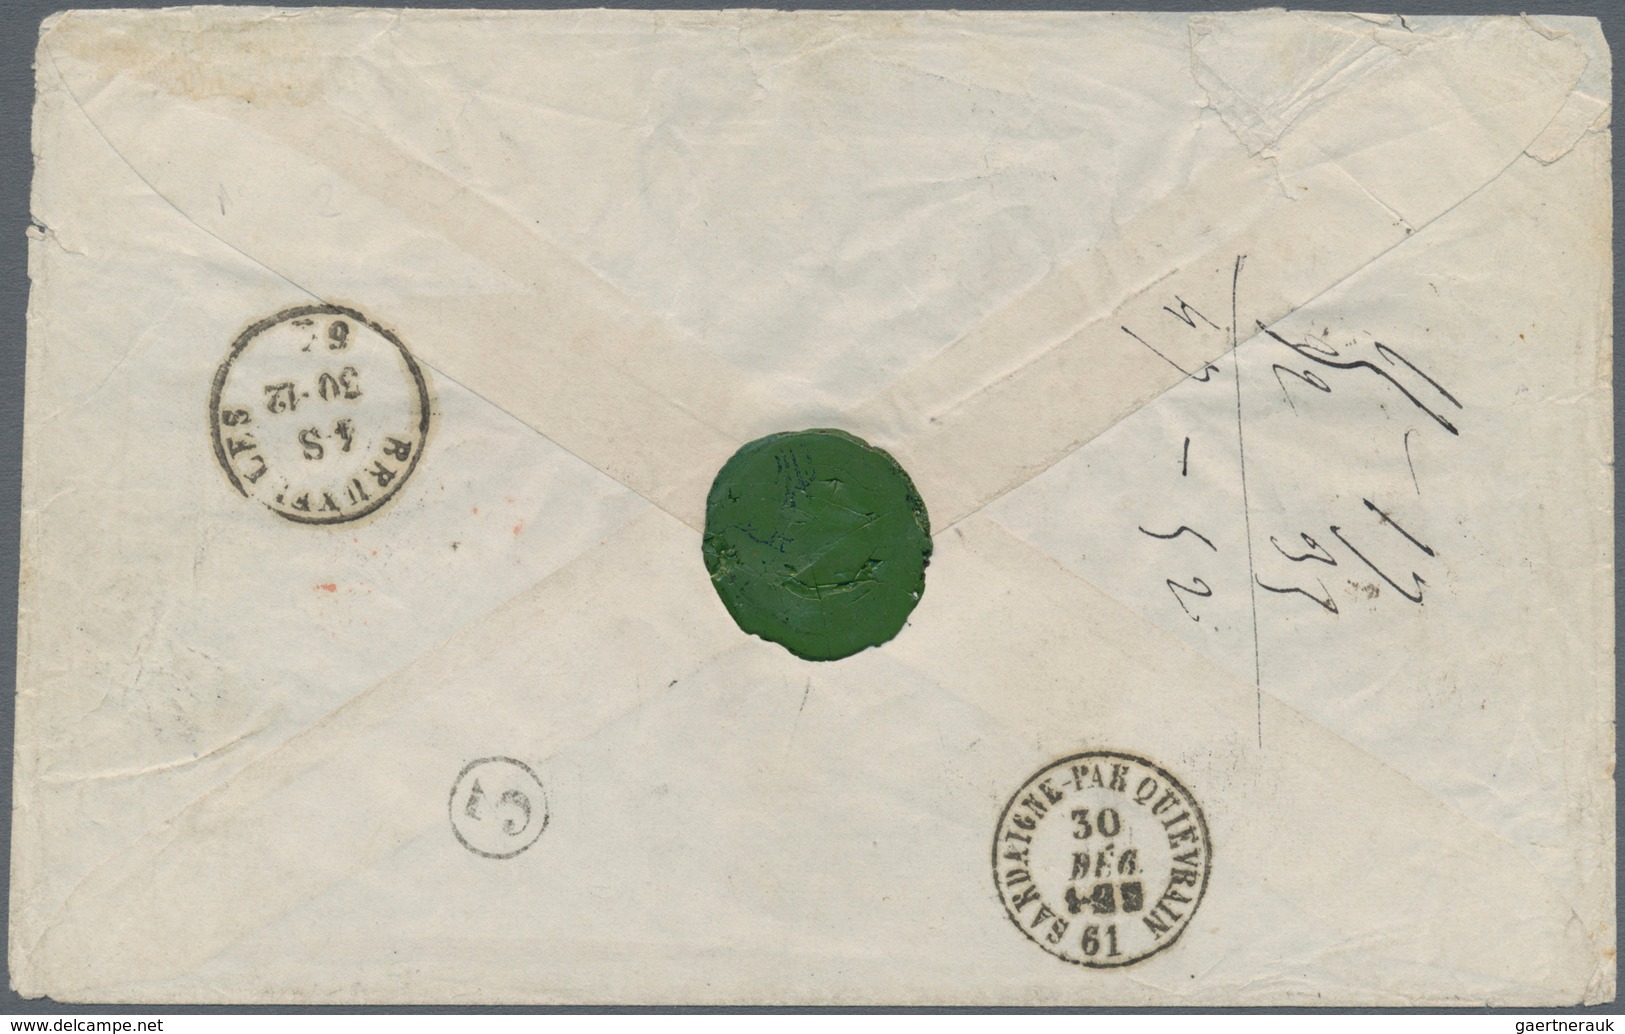 00848 Italien - Altitalienische Staaten: Sardinien: 1861: Letter From Turin To Brussels, Franked For 1,80 - Sardaigne